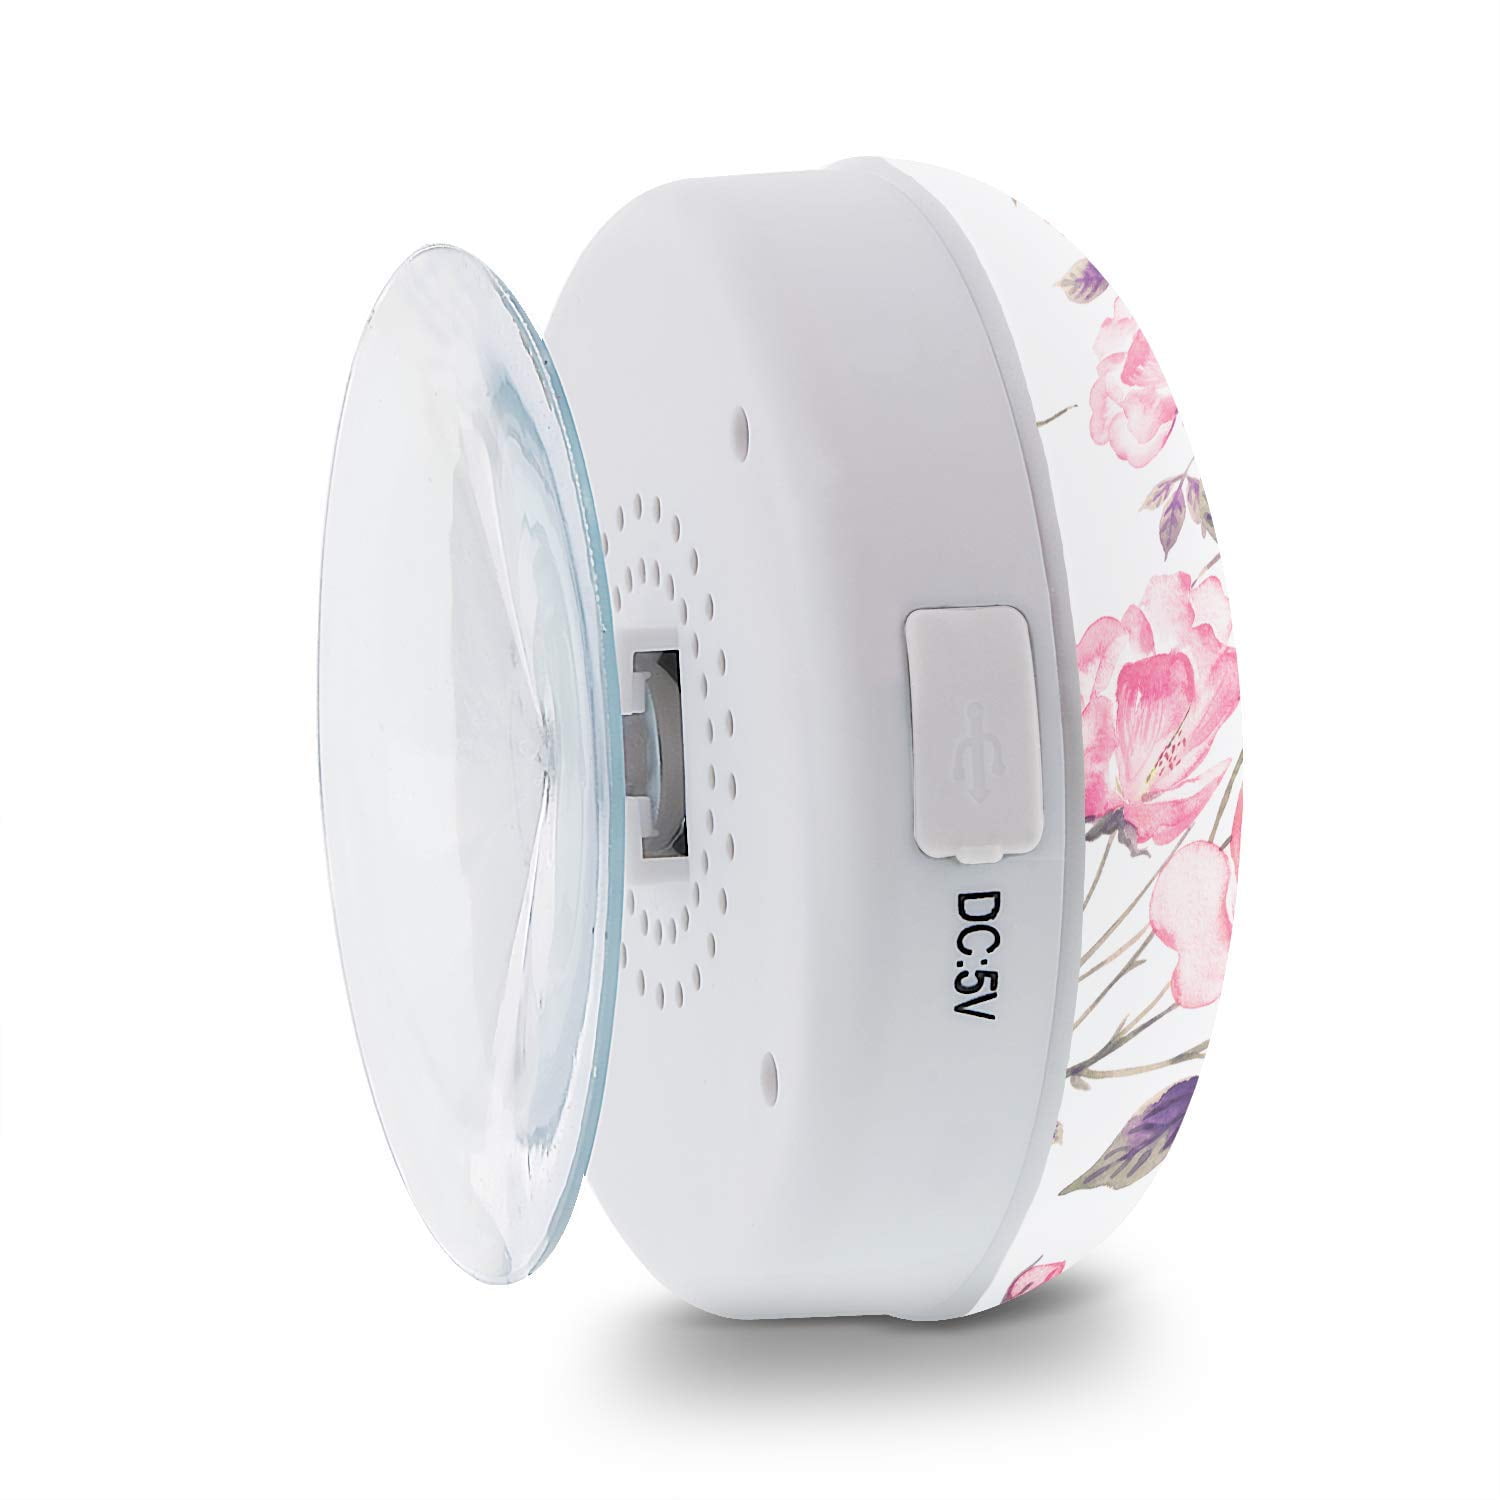 Aduro AquaSound Wsp20 Shower Speaker Portable Waterproof Wireless Bluetooth 